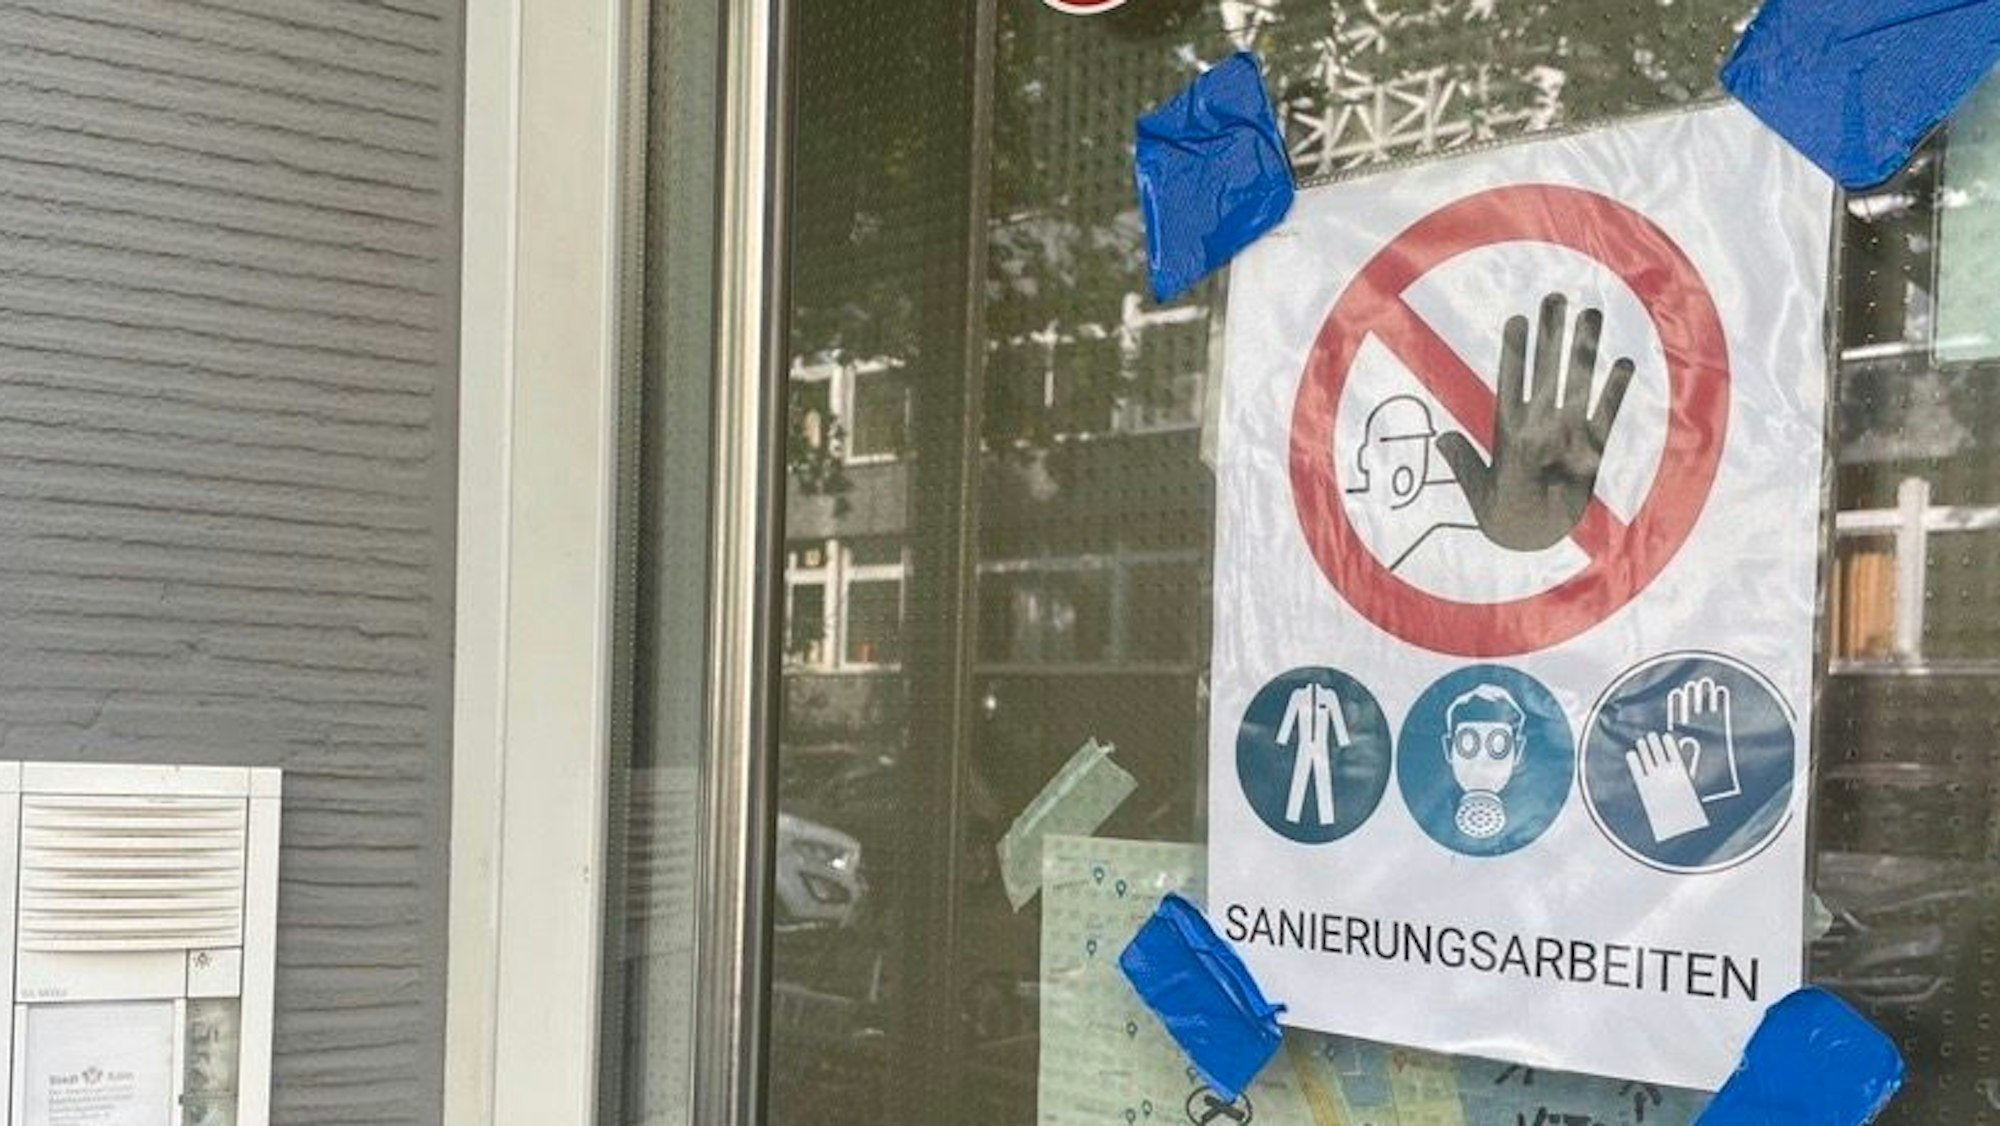 Schilder warnen vor dem Betreten der städtischen Kita Mauritiuswall in Köln, in der Asbest festgestellt wurde. Auch in einer städtischen Kita in Chorweiler fand man den schädlichen Stoff.